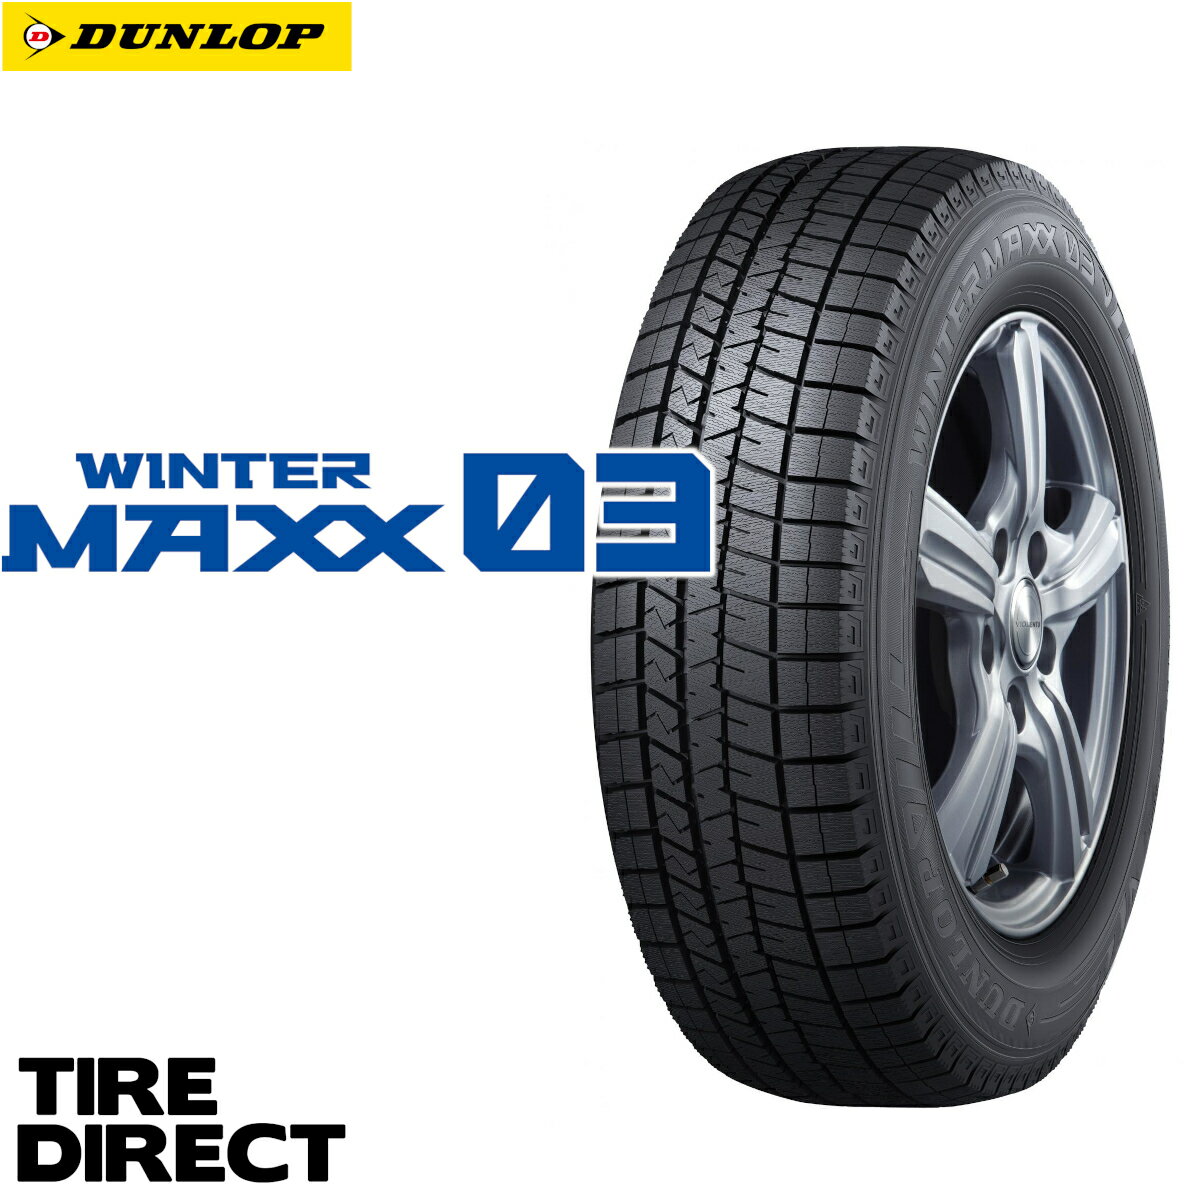 新品 ダンロップ ウインターマックス WM03 175/70R14 84Q DUNLOP WINTER MAXX ウィンターマックス 175/70-14 冬タイヤ スタッドレスタイヤ